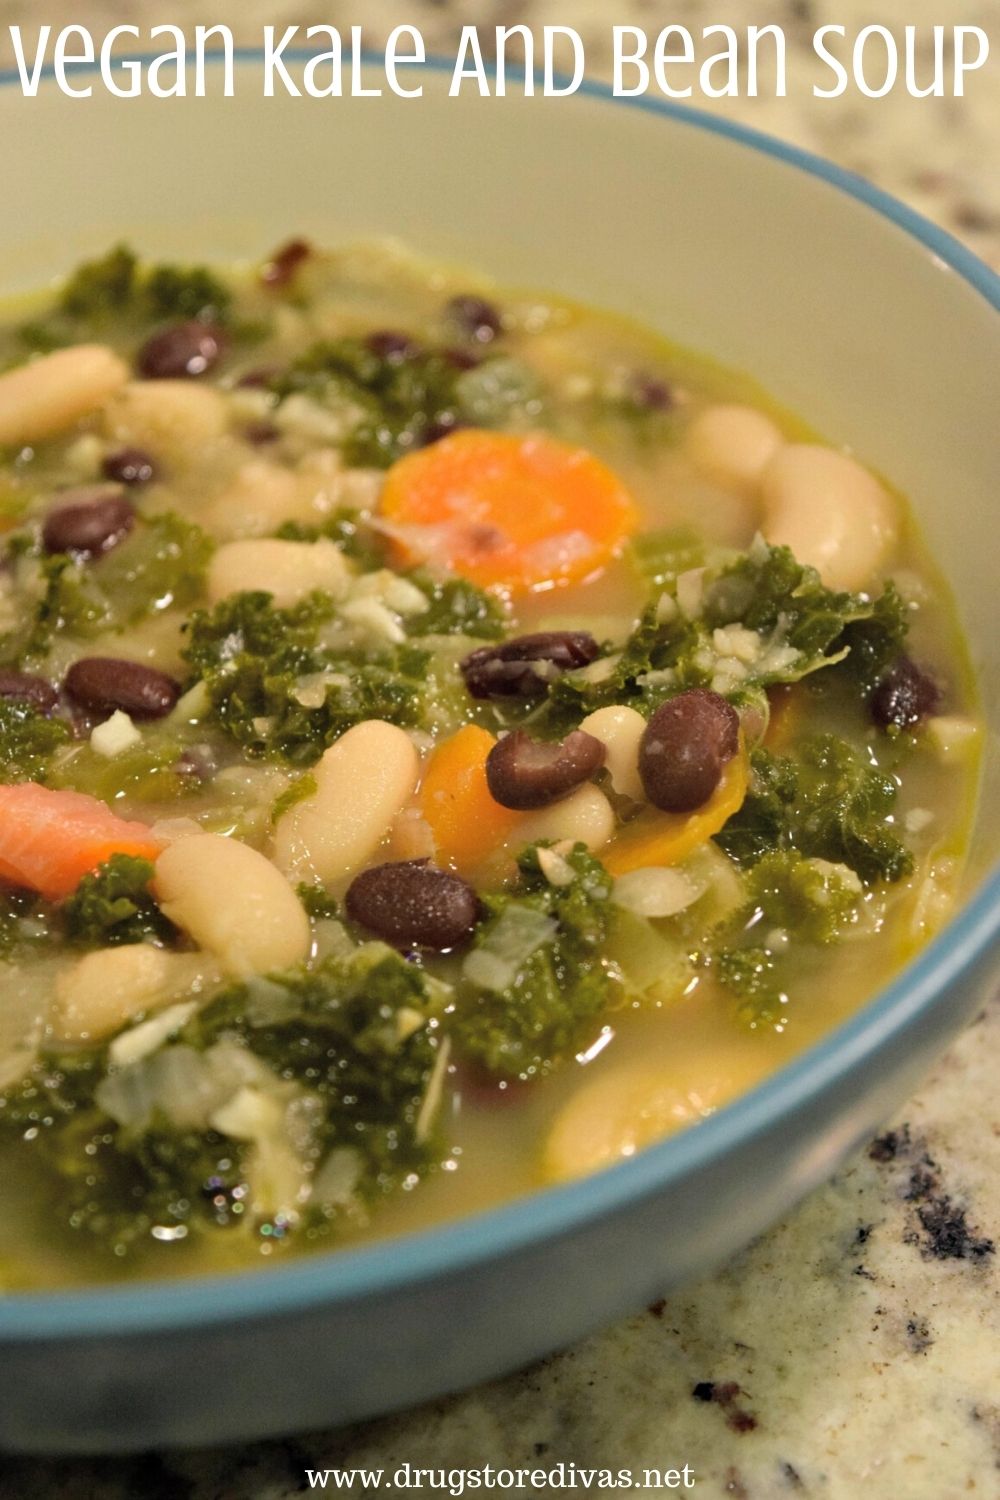 Vegan Kale & Bean Soup in a bowl.